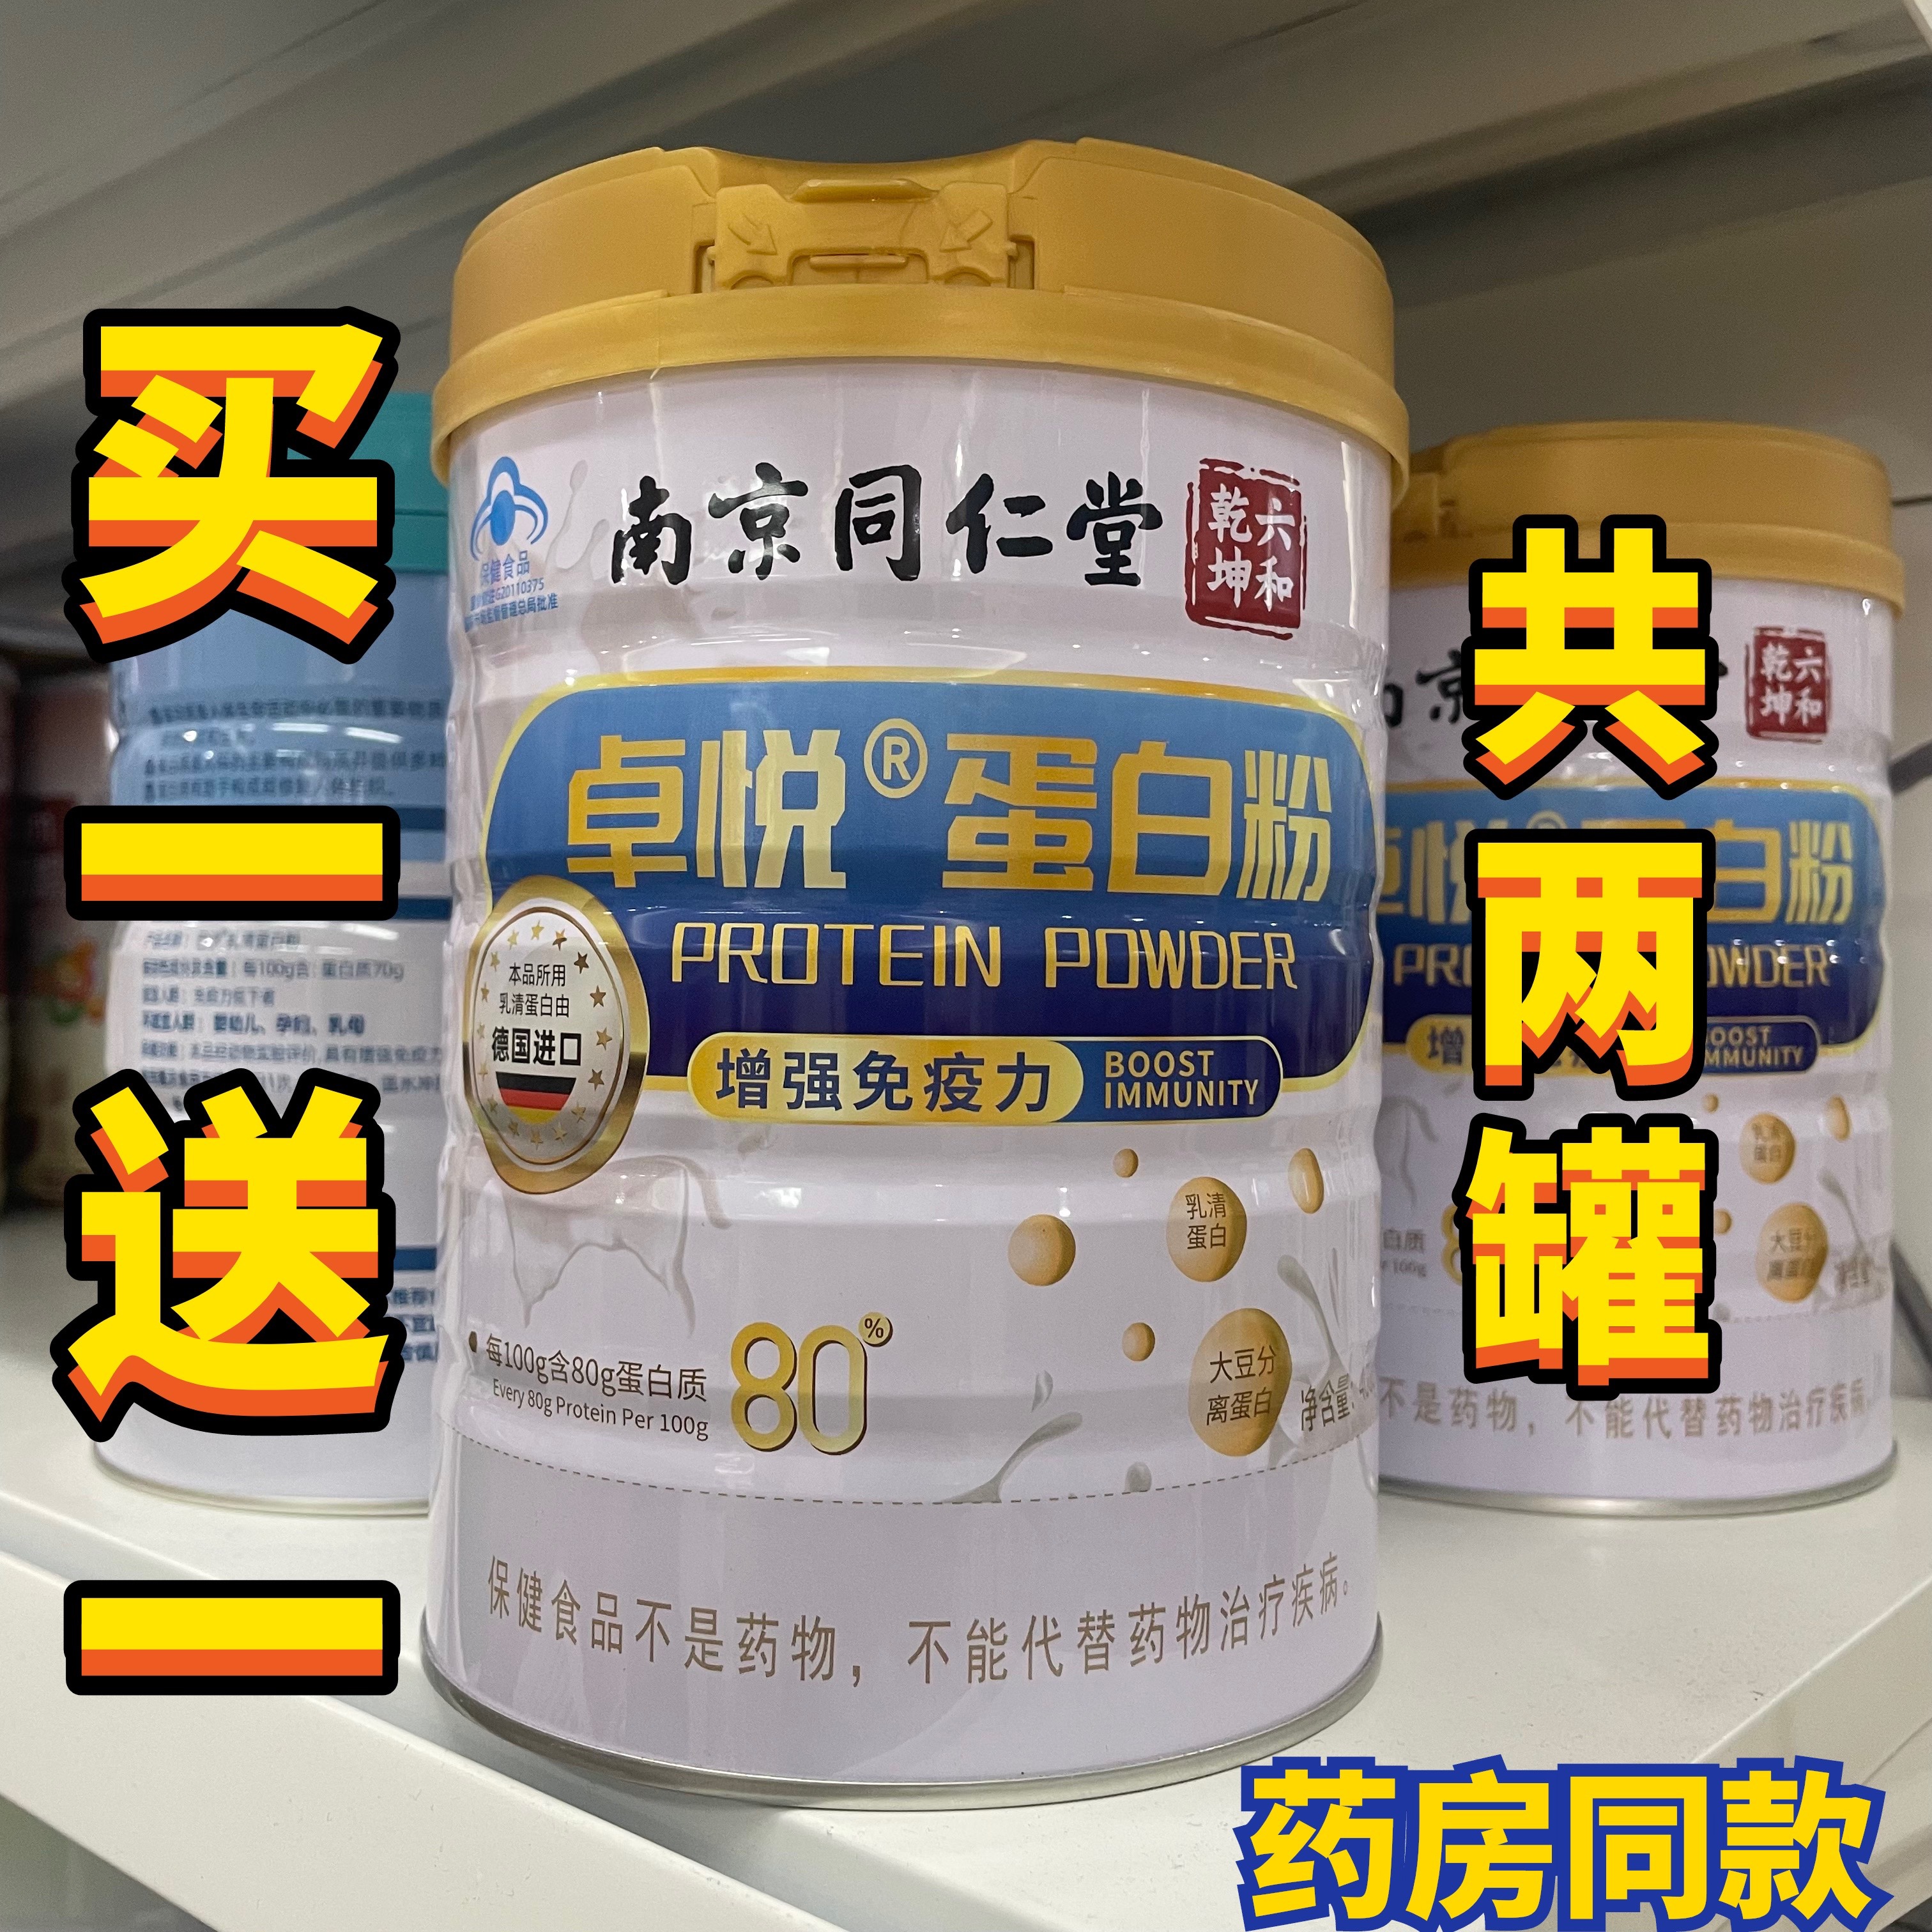 南京同仁堂卓悦蛋白质粉进口乳清增强营养免疫力中老年人男女儿童